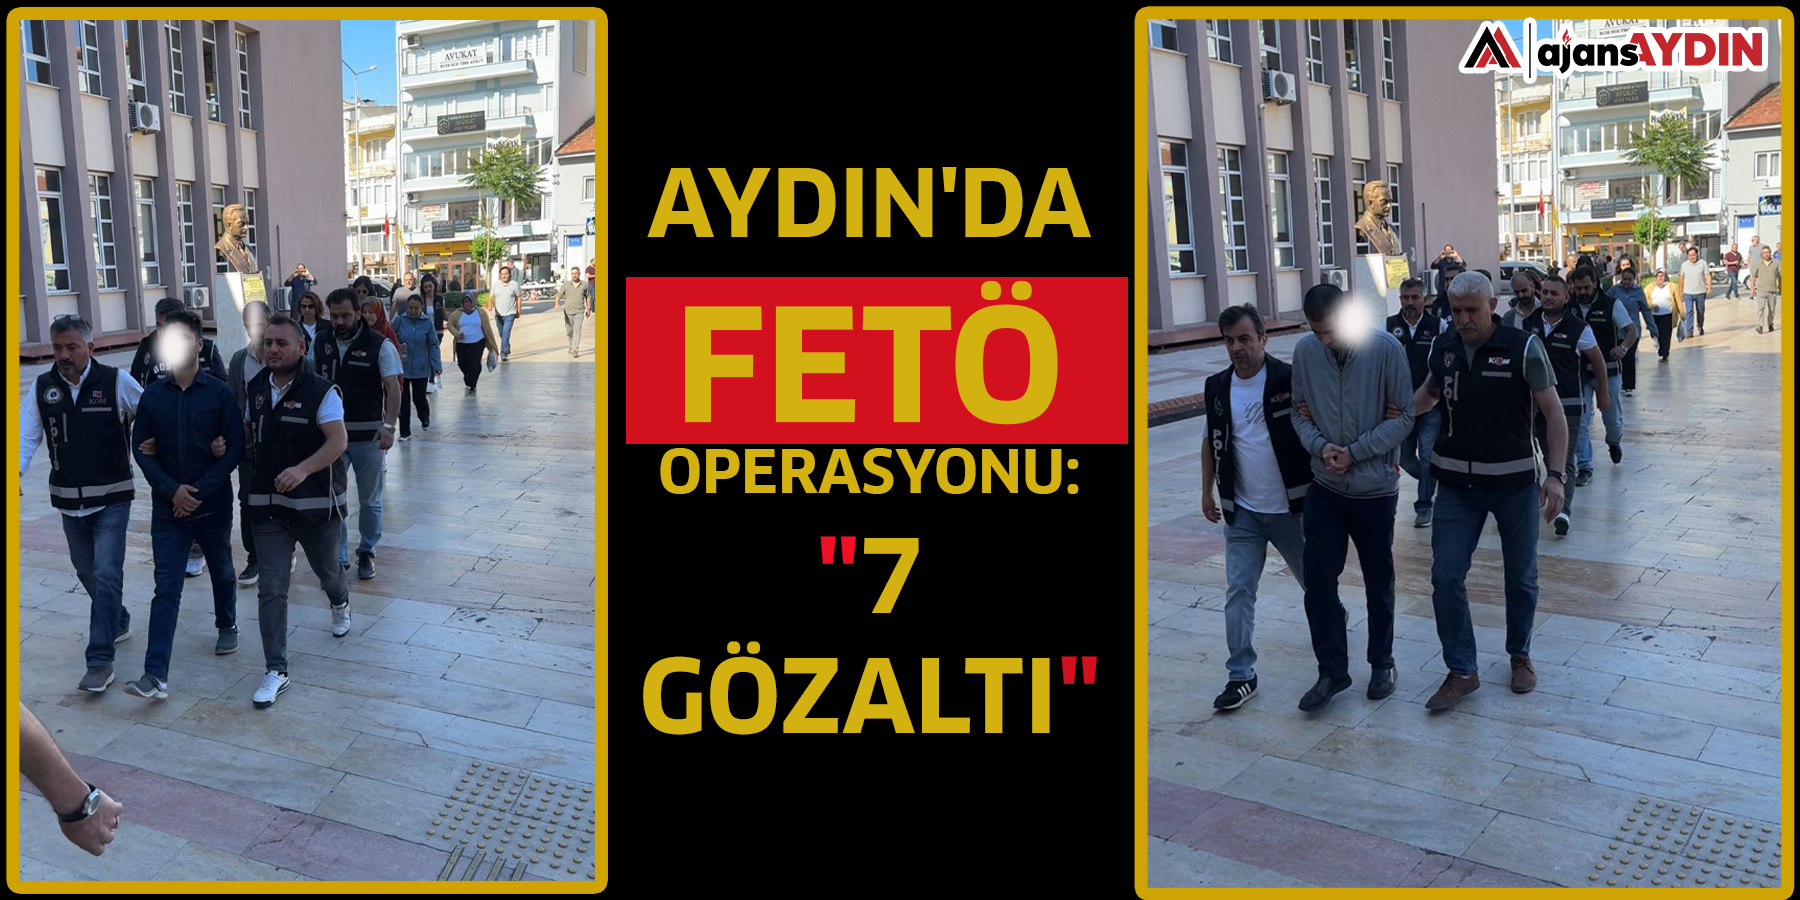 Aydın'da FETÖ operasyonu: "7  Gözaltı"